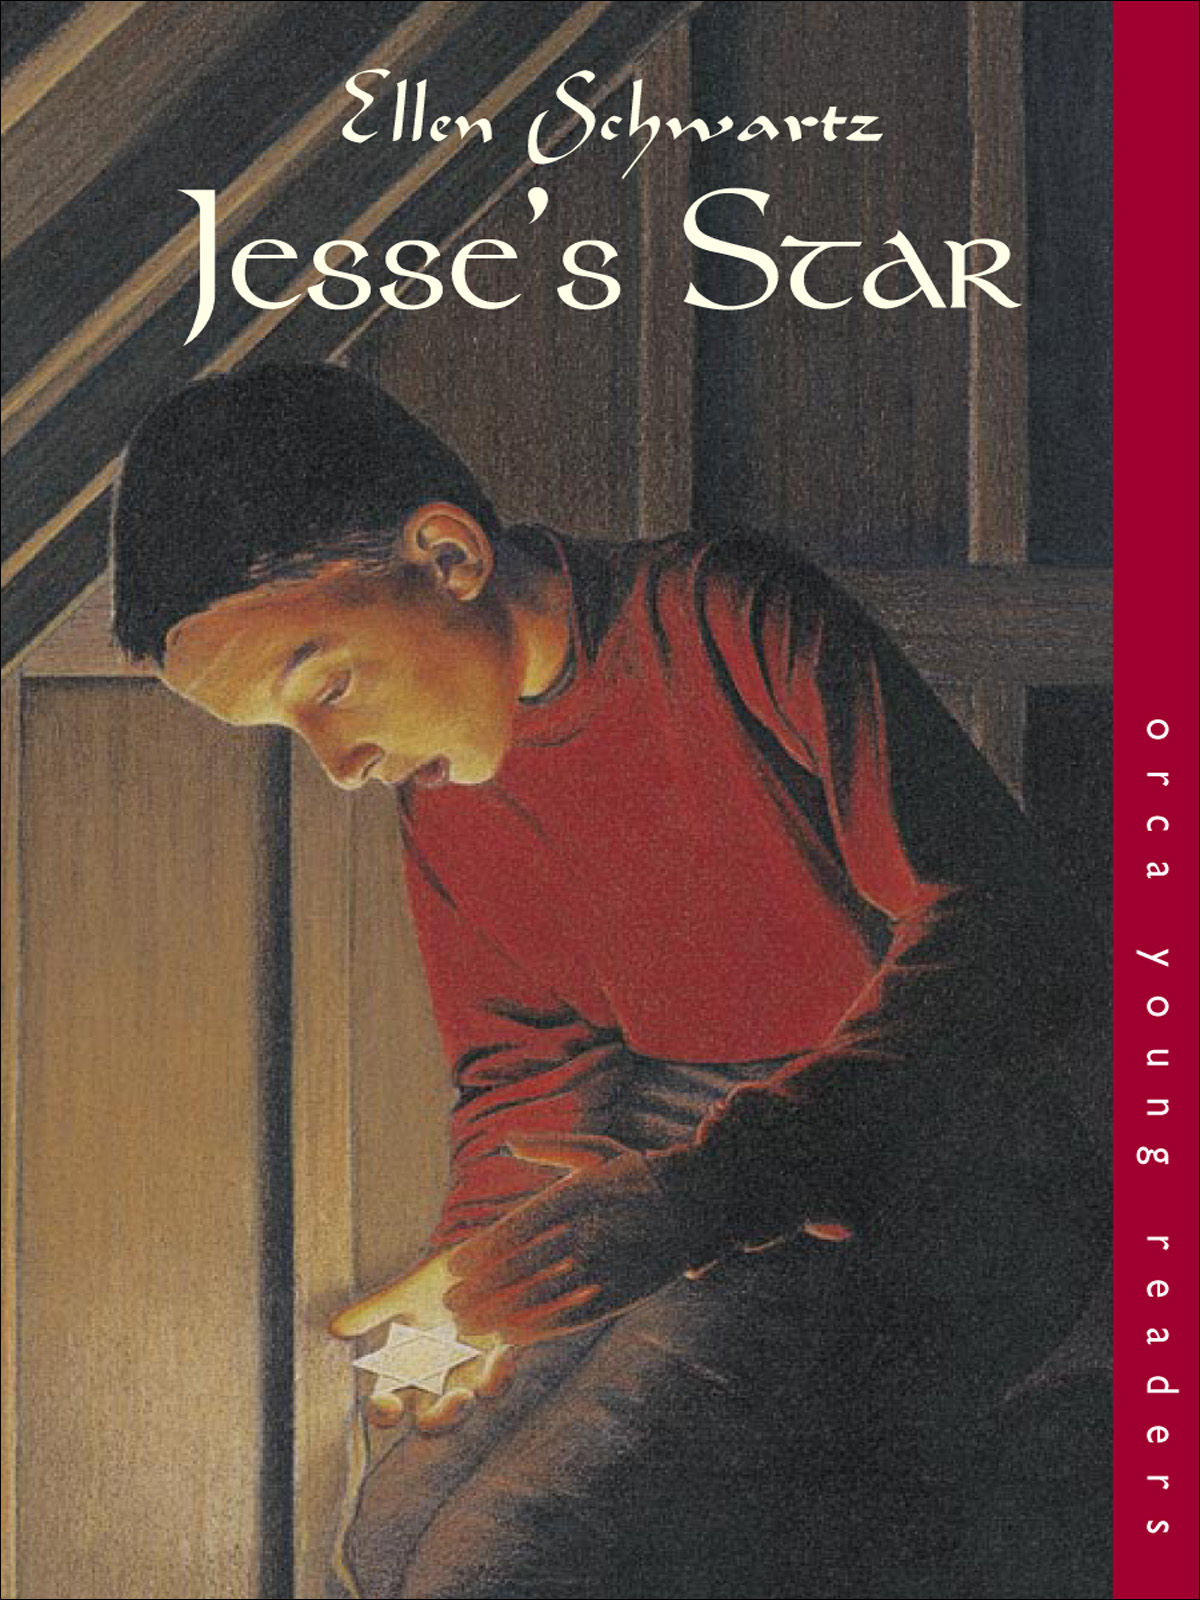 Jesses Star (2000) by Ellen Schwartz